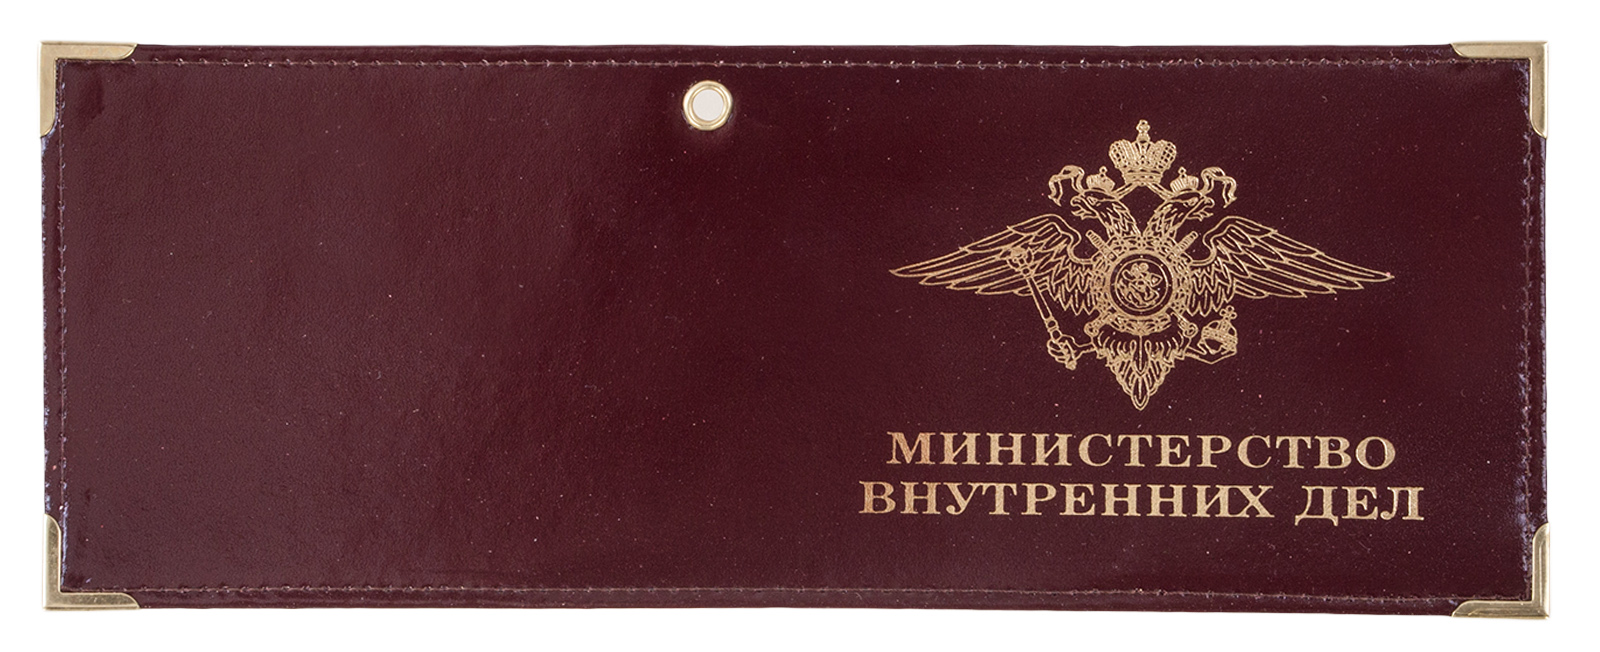 Обложка на удостоверение "Министерство внутренних дел" 